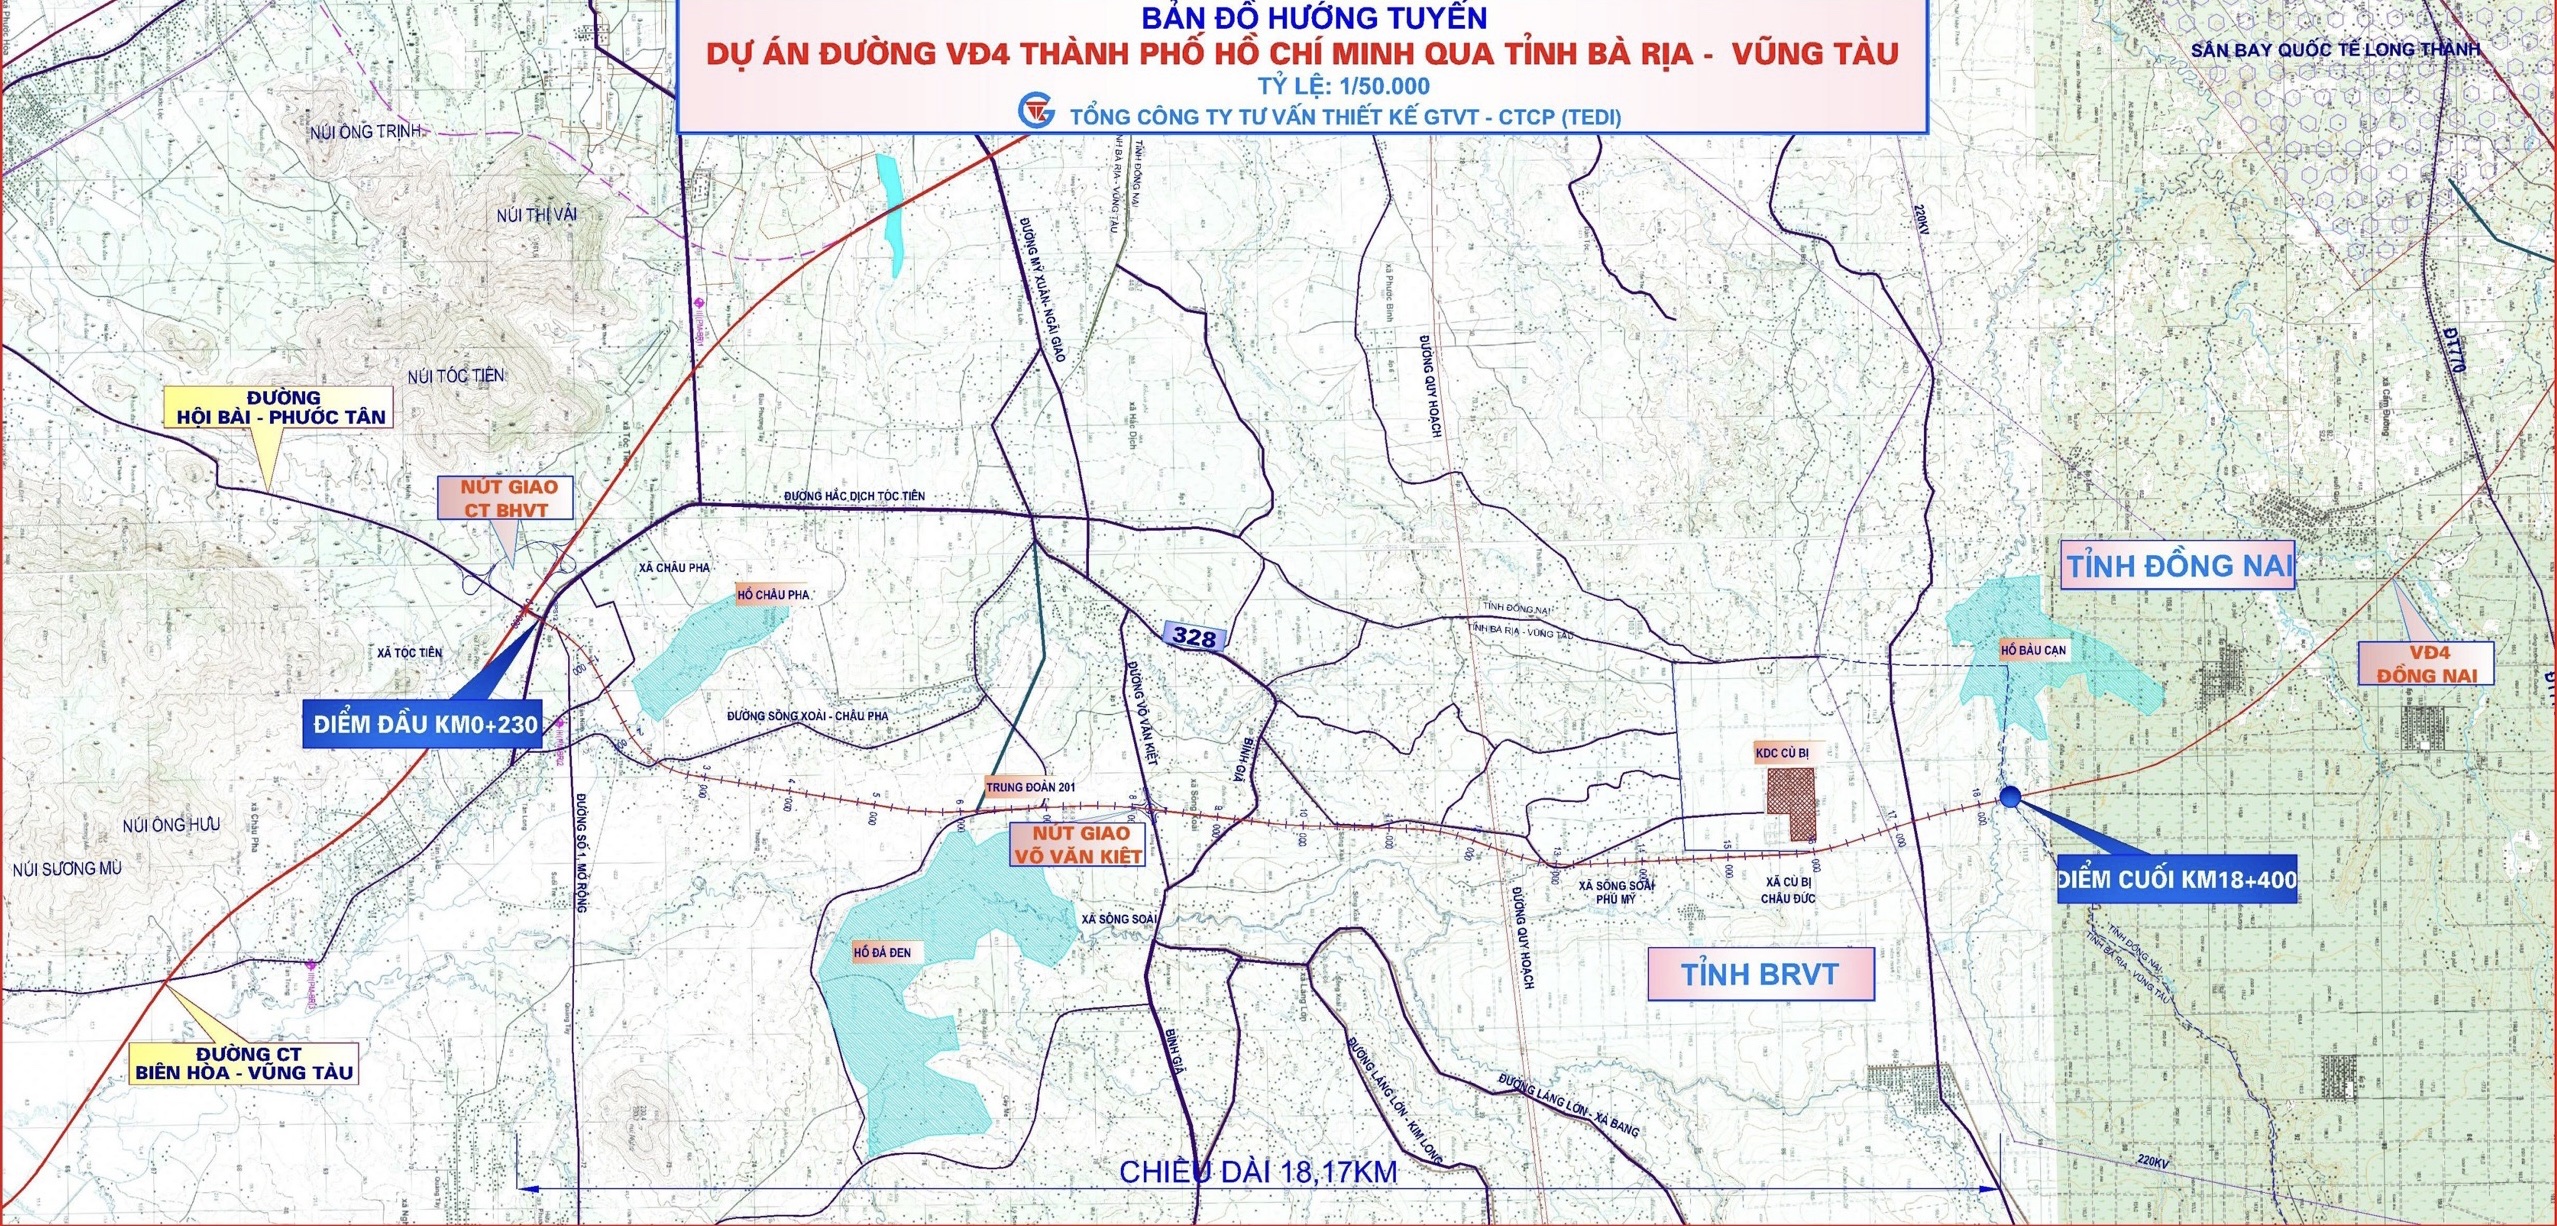 Bản đồ hướng tuyến dự án đường Vành đai 4 đoạn đi qua tỉnh Bà Rịa-Vũng Tàu.